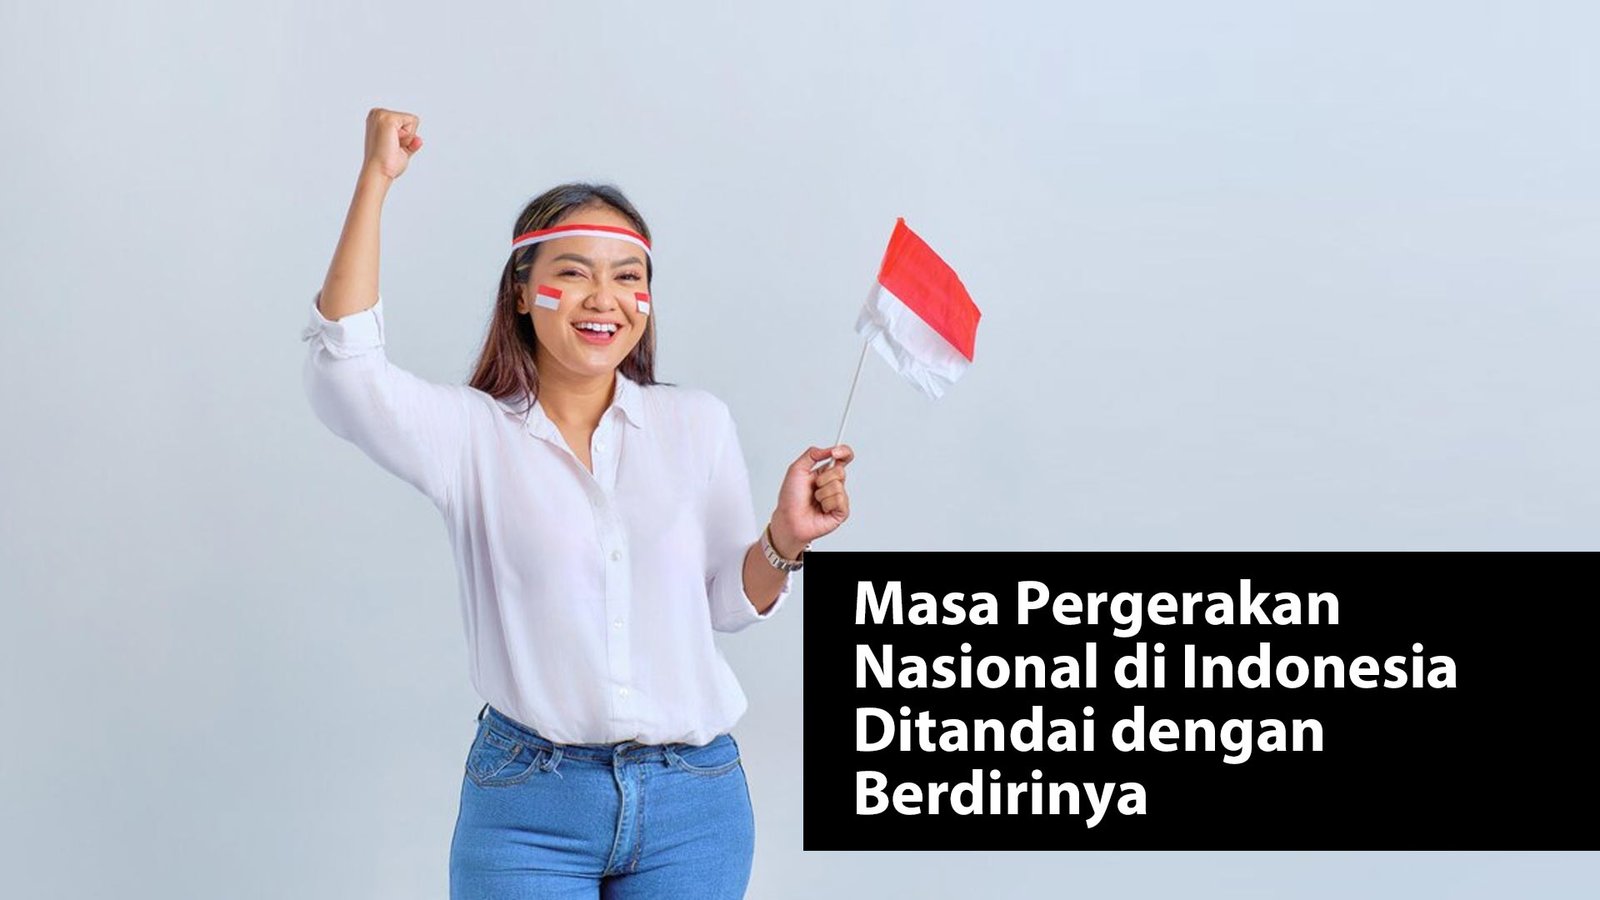 Masa Pergerakan Nasional di Indonesia Ditandai dengan Berdirinya